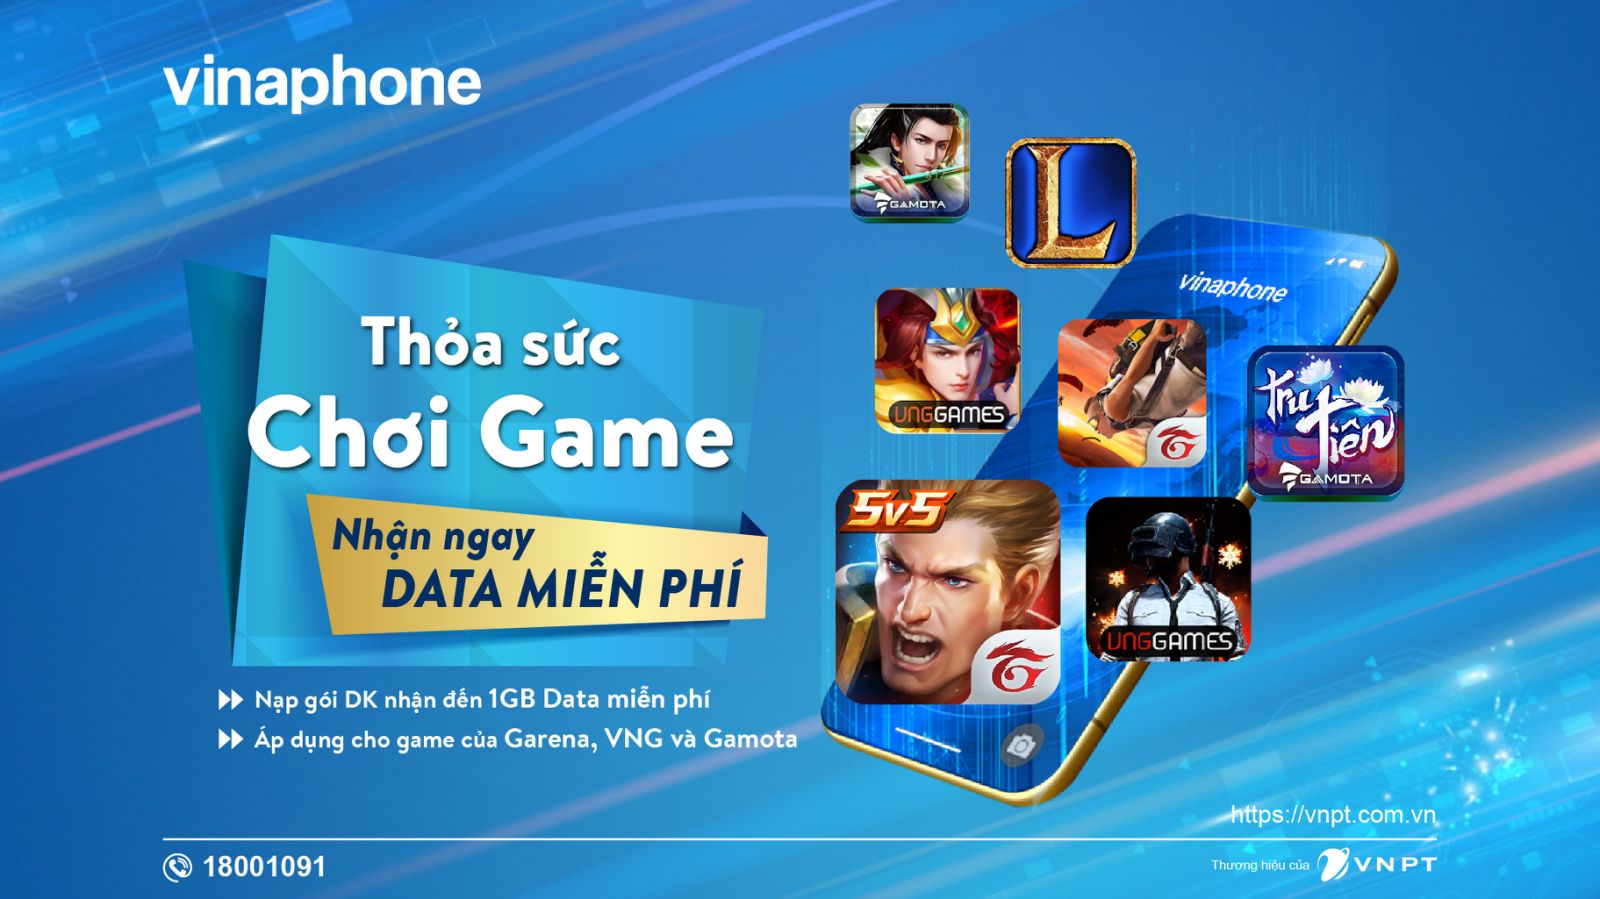 Thỏa sức chơi game, nhận thêm Data miễn phí khi nạp gói DK của VinaPhone